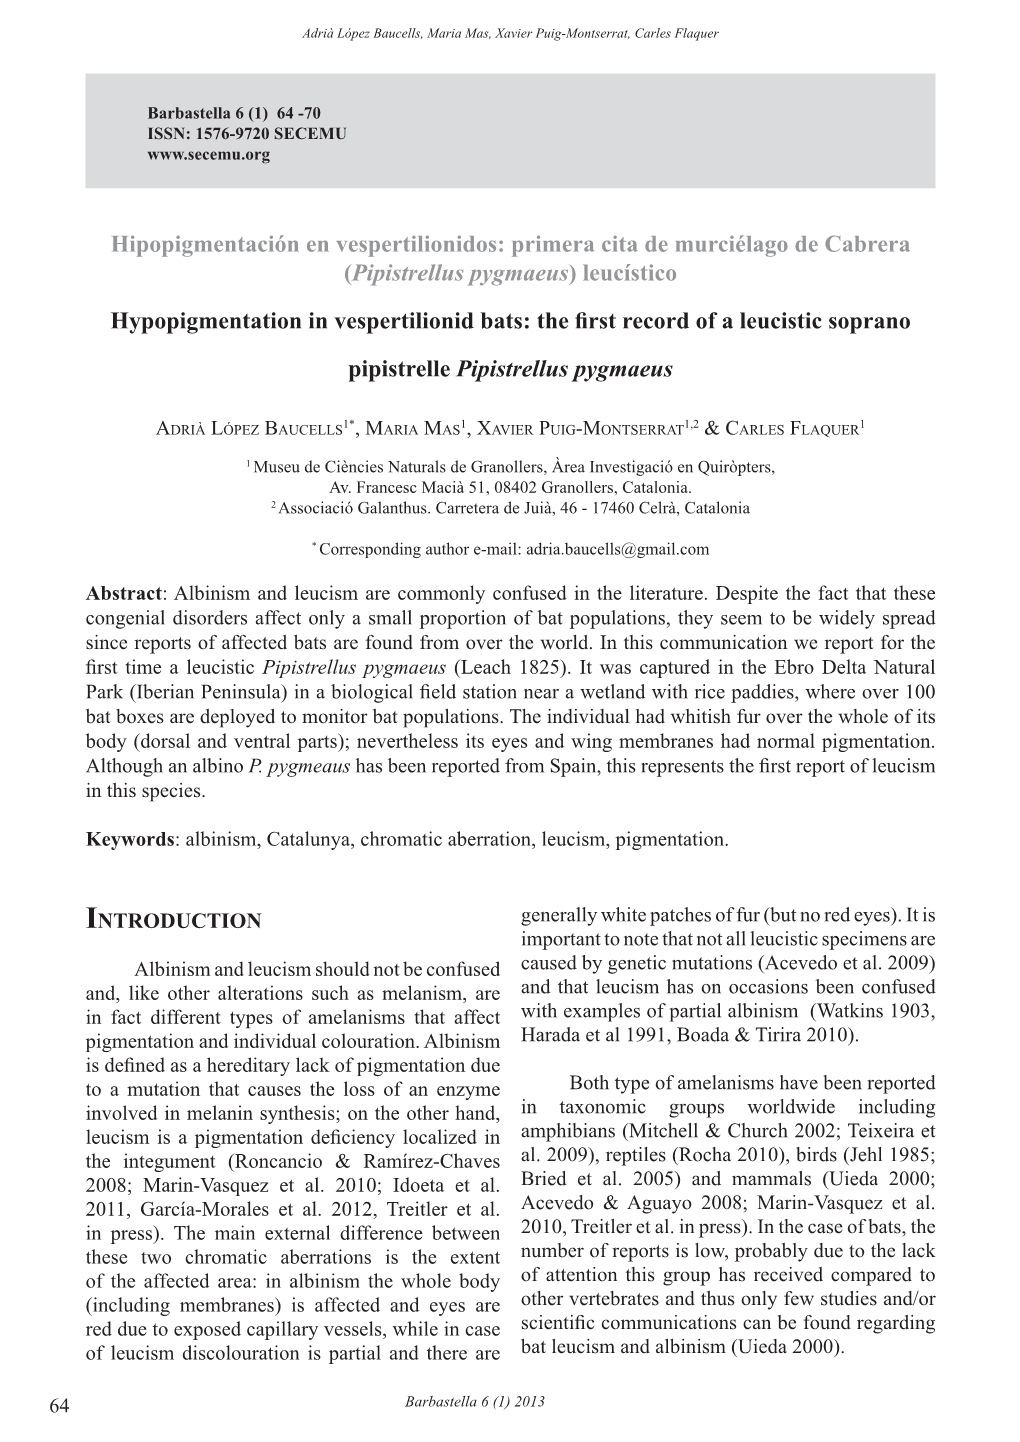 Hipopigmentación En Vespertilionidos: Primera Cita De